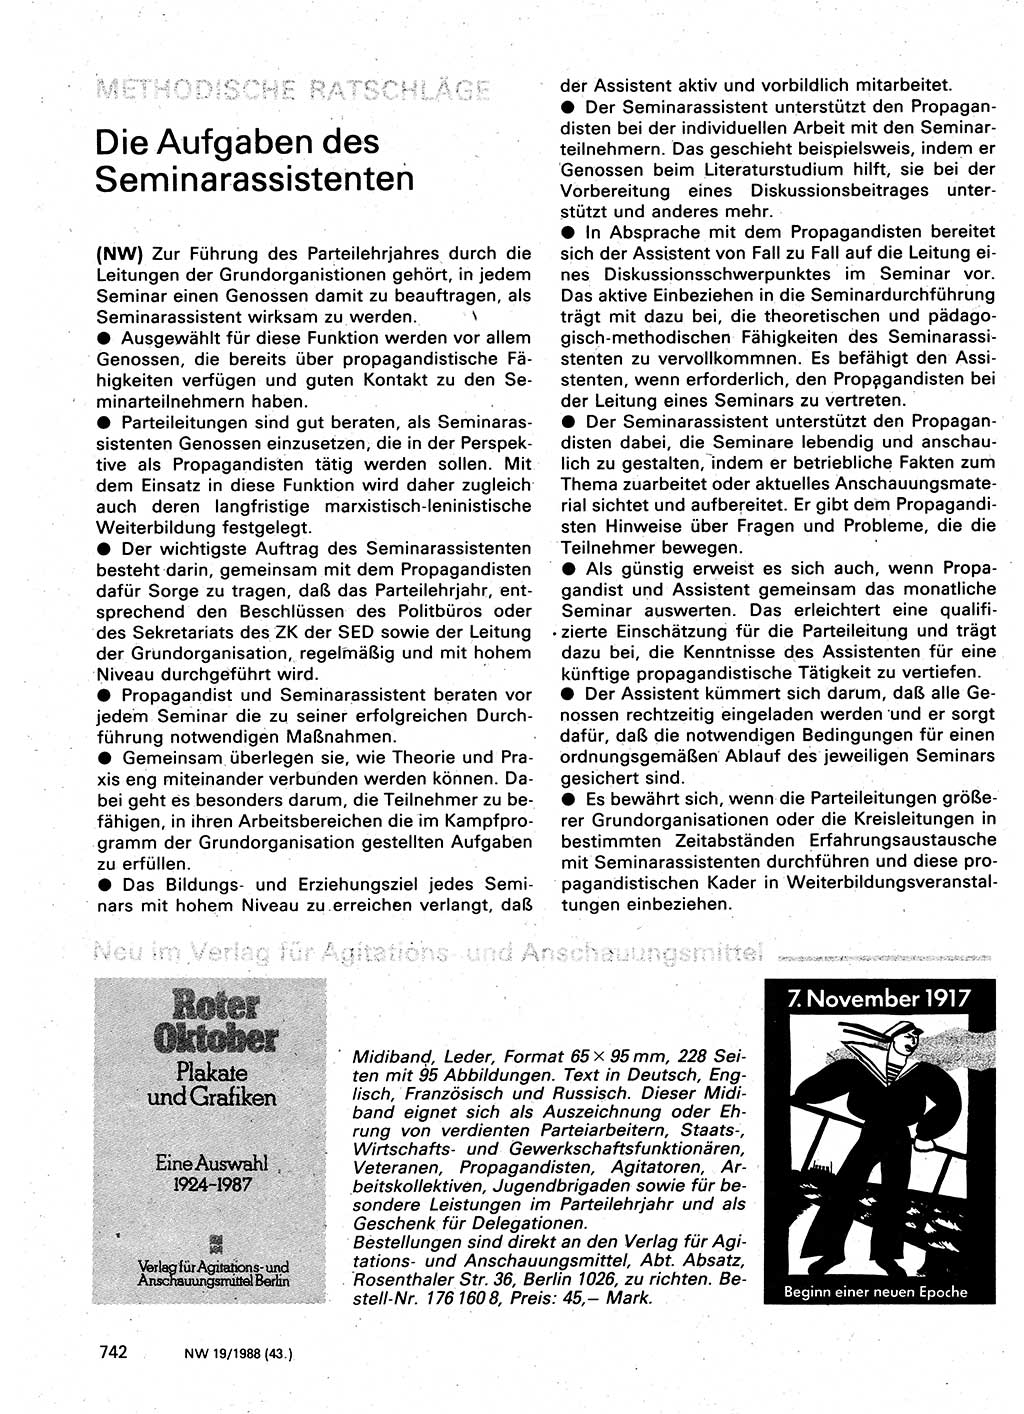 Neuer Weg (NW), Organ des Zentralkomitees (ZK) der SED (Sozialistische Einheitspartei Deutschlands) für Fragen des Parteilebens, 43. Jahrgang [Deutsche Demokratische Republik (DDR)] 1988, Seite 742 (NW ZK SED DDR 1988, S. 742)